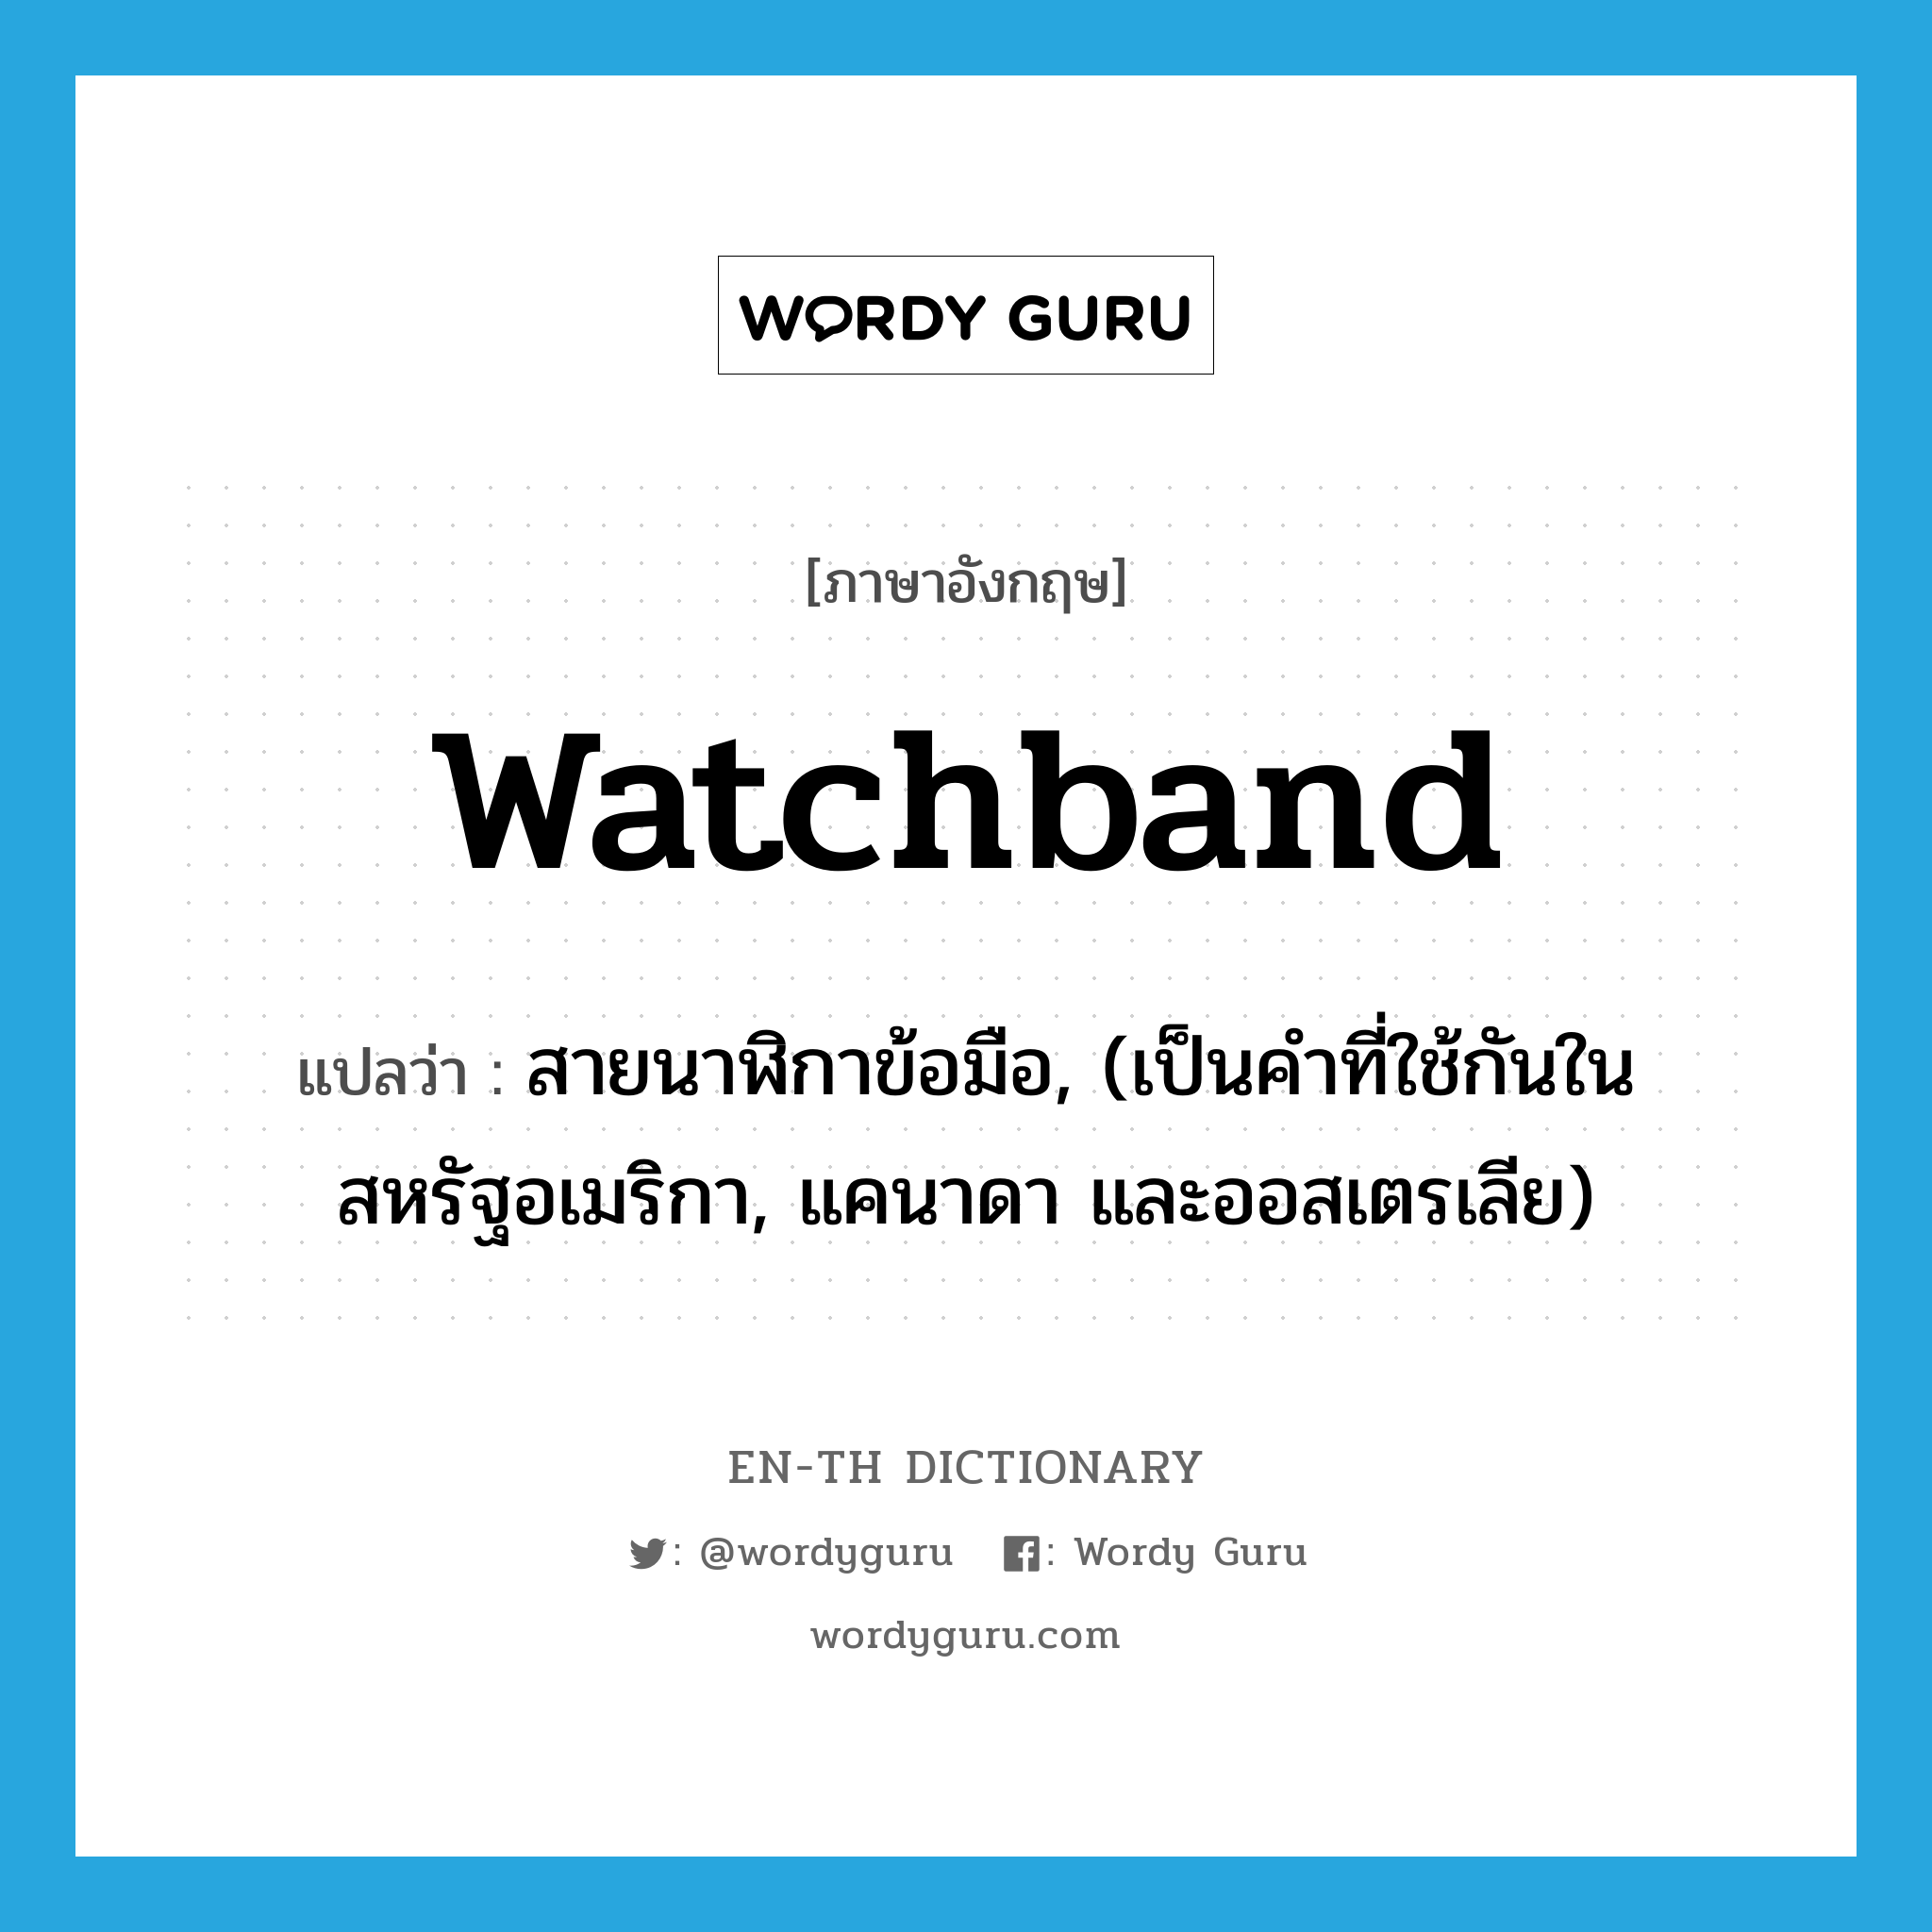 watchband แปลว่า?, คำศัพท์ภาษาอังกฤษ watchband แปลว่า สายนาฬิกาข้อมือ, (เป็นคำที่ใช้กันในสหรัฐอเมริกา, แคนาดา และออสเตรเลีย) ประเภท N หมวด N